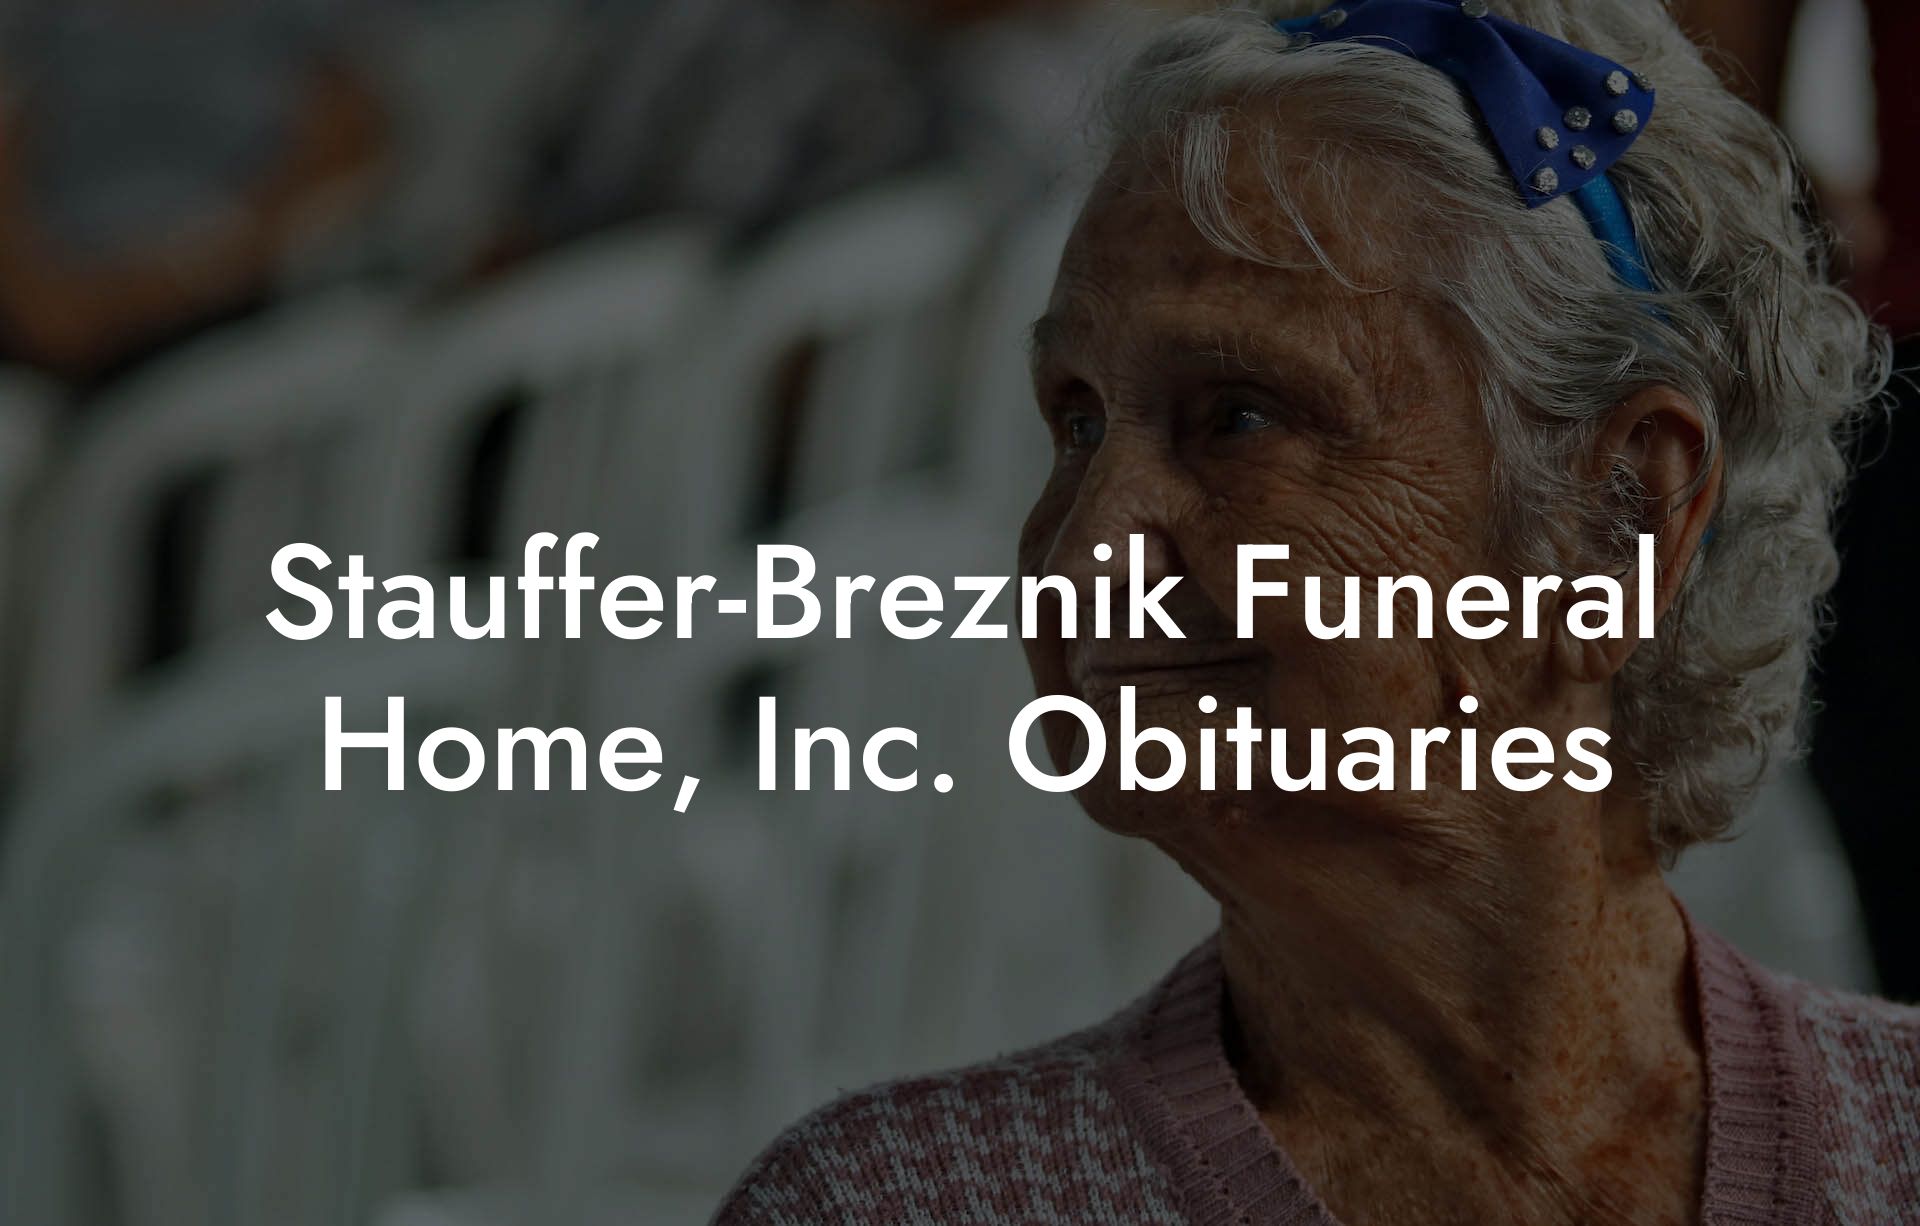 Stauffer-Breznik Funeral Home, Inc. Obituaries